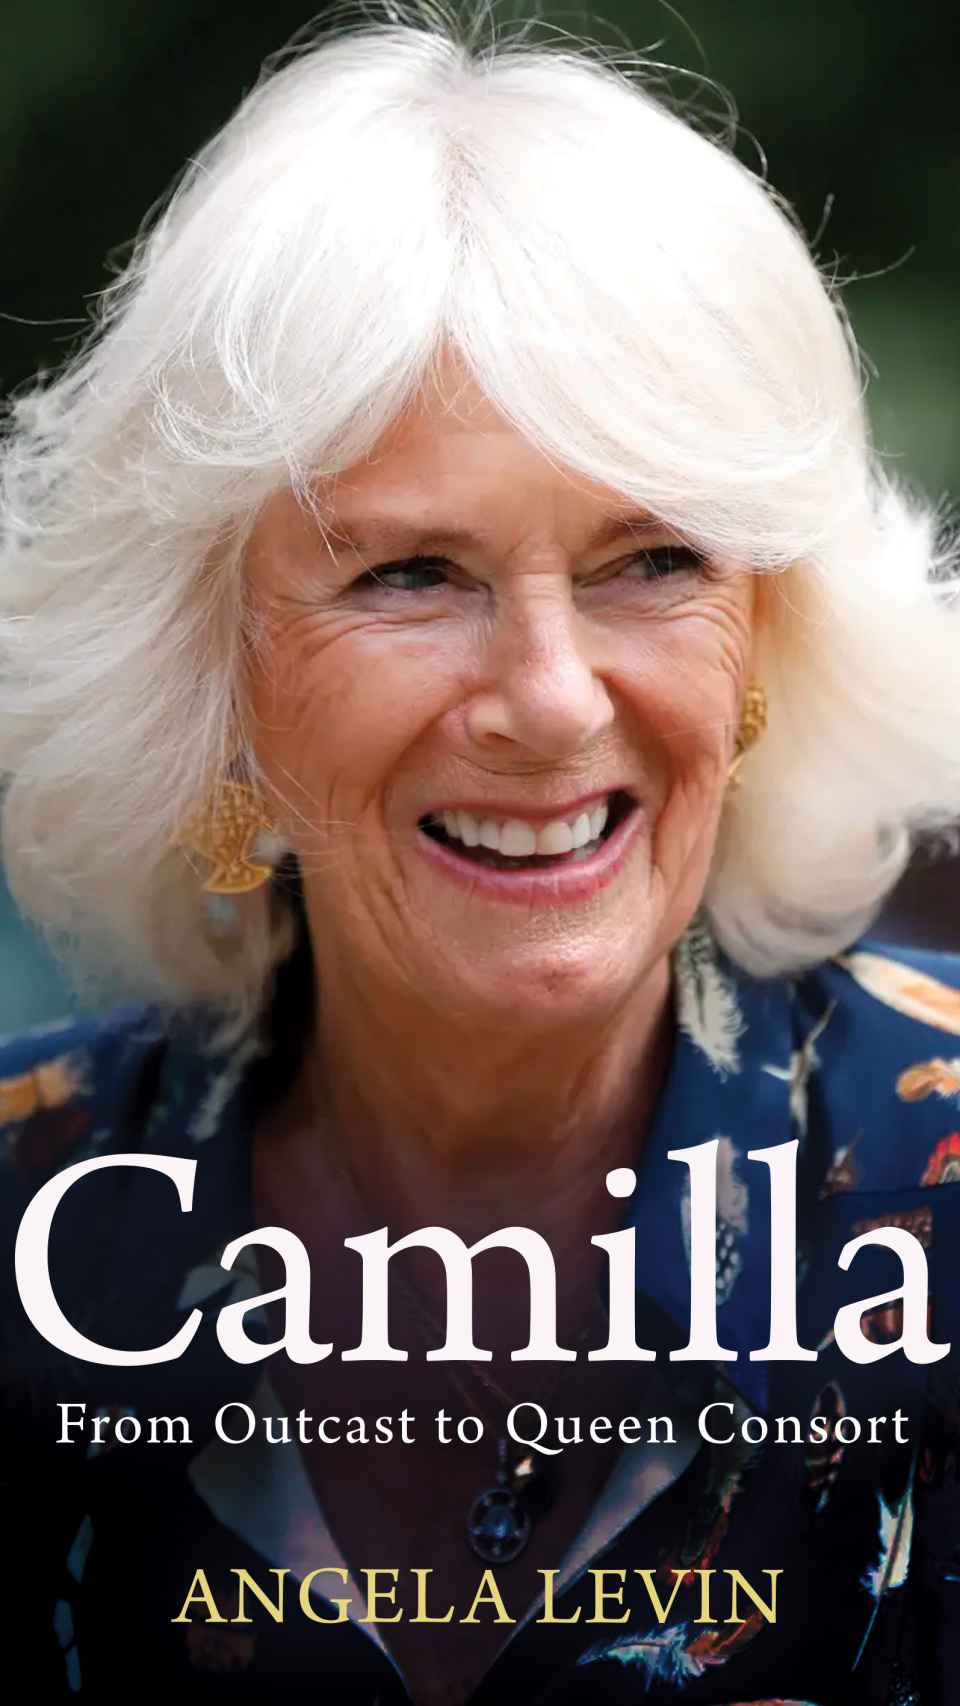 Portada del libro sobre Camilla.